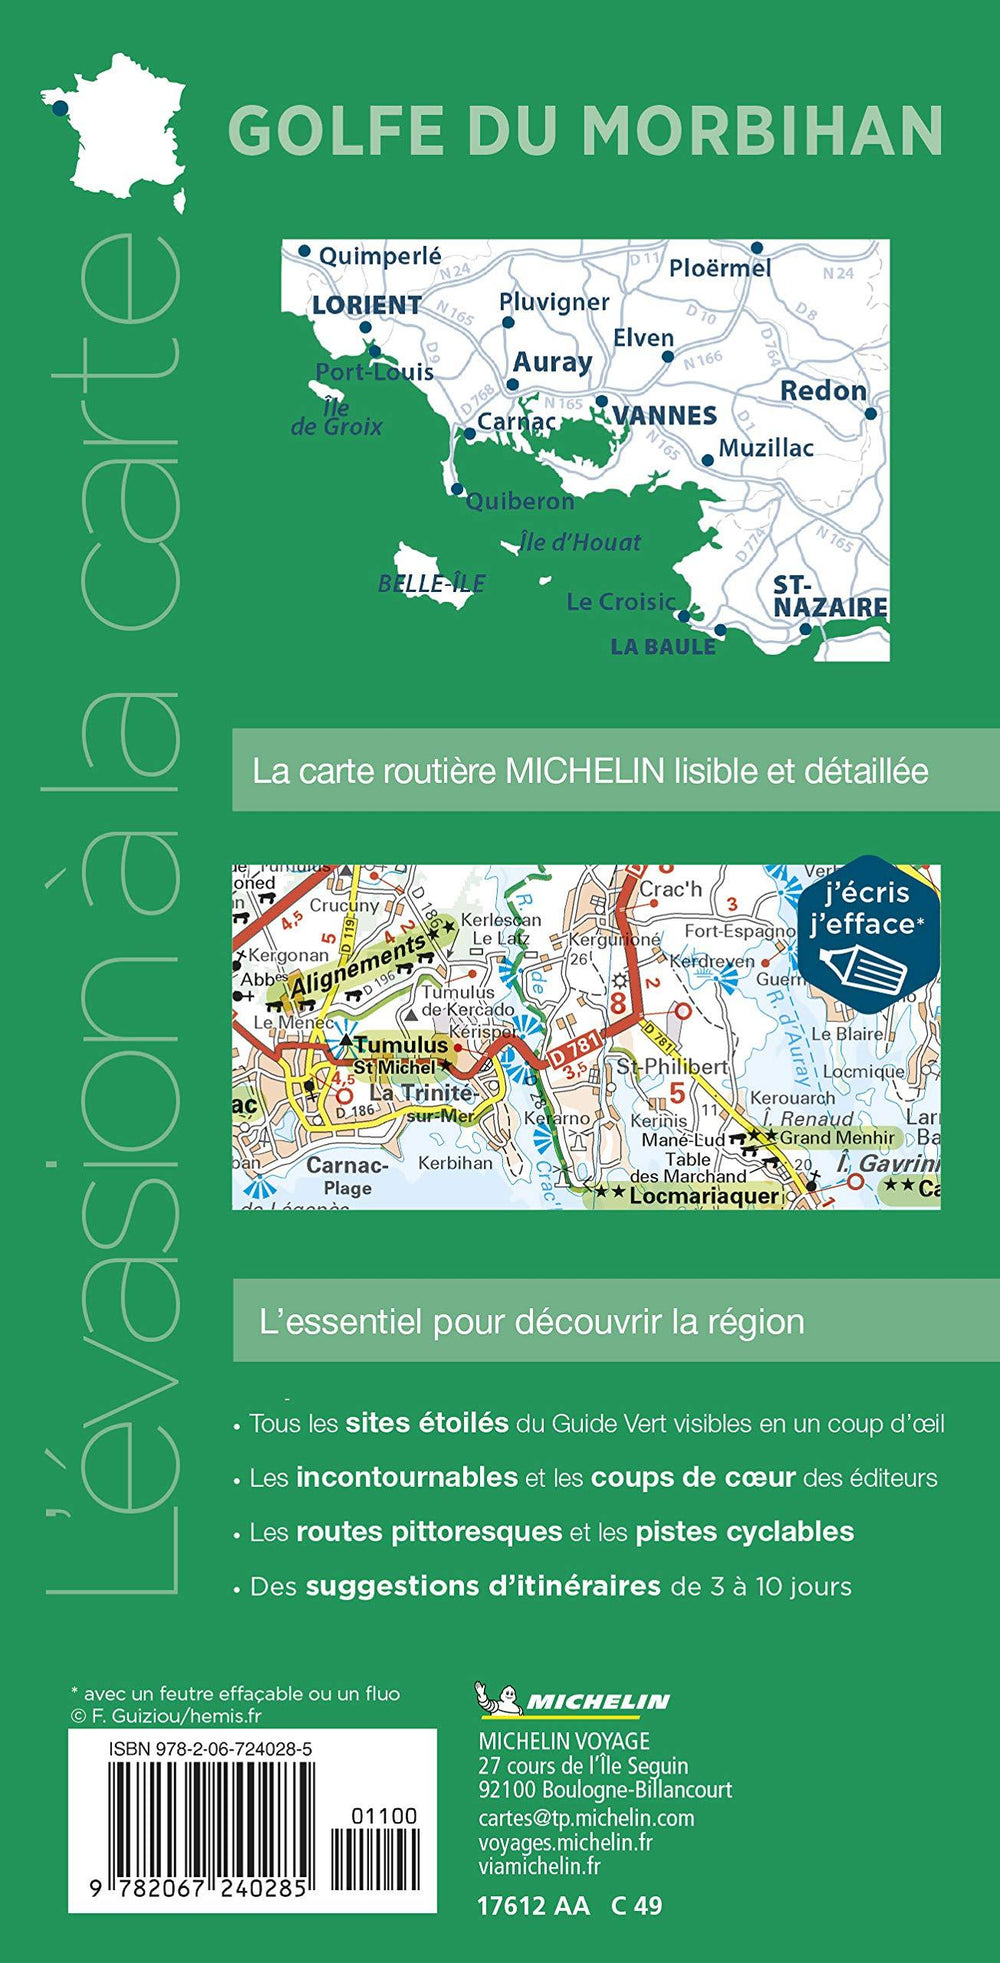 Carte routière plastifiée - Golfe du Morbihan (Lorient, Vannes, La Baule) | Michelin carte pliée Michelin 